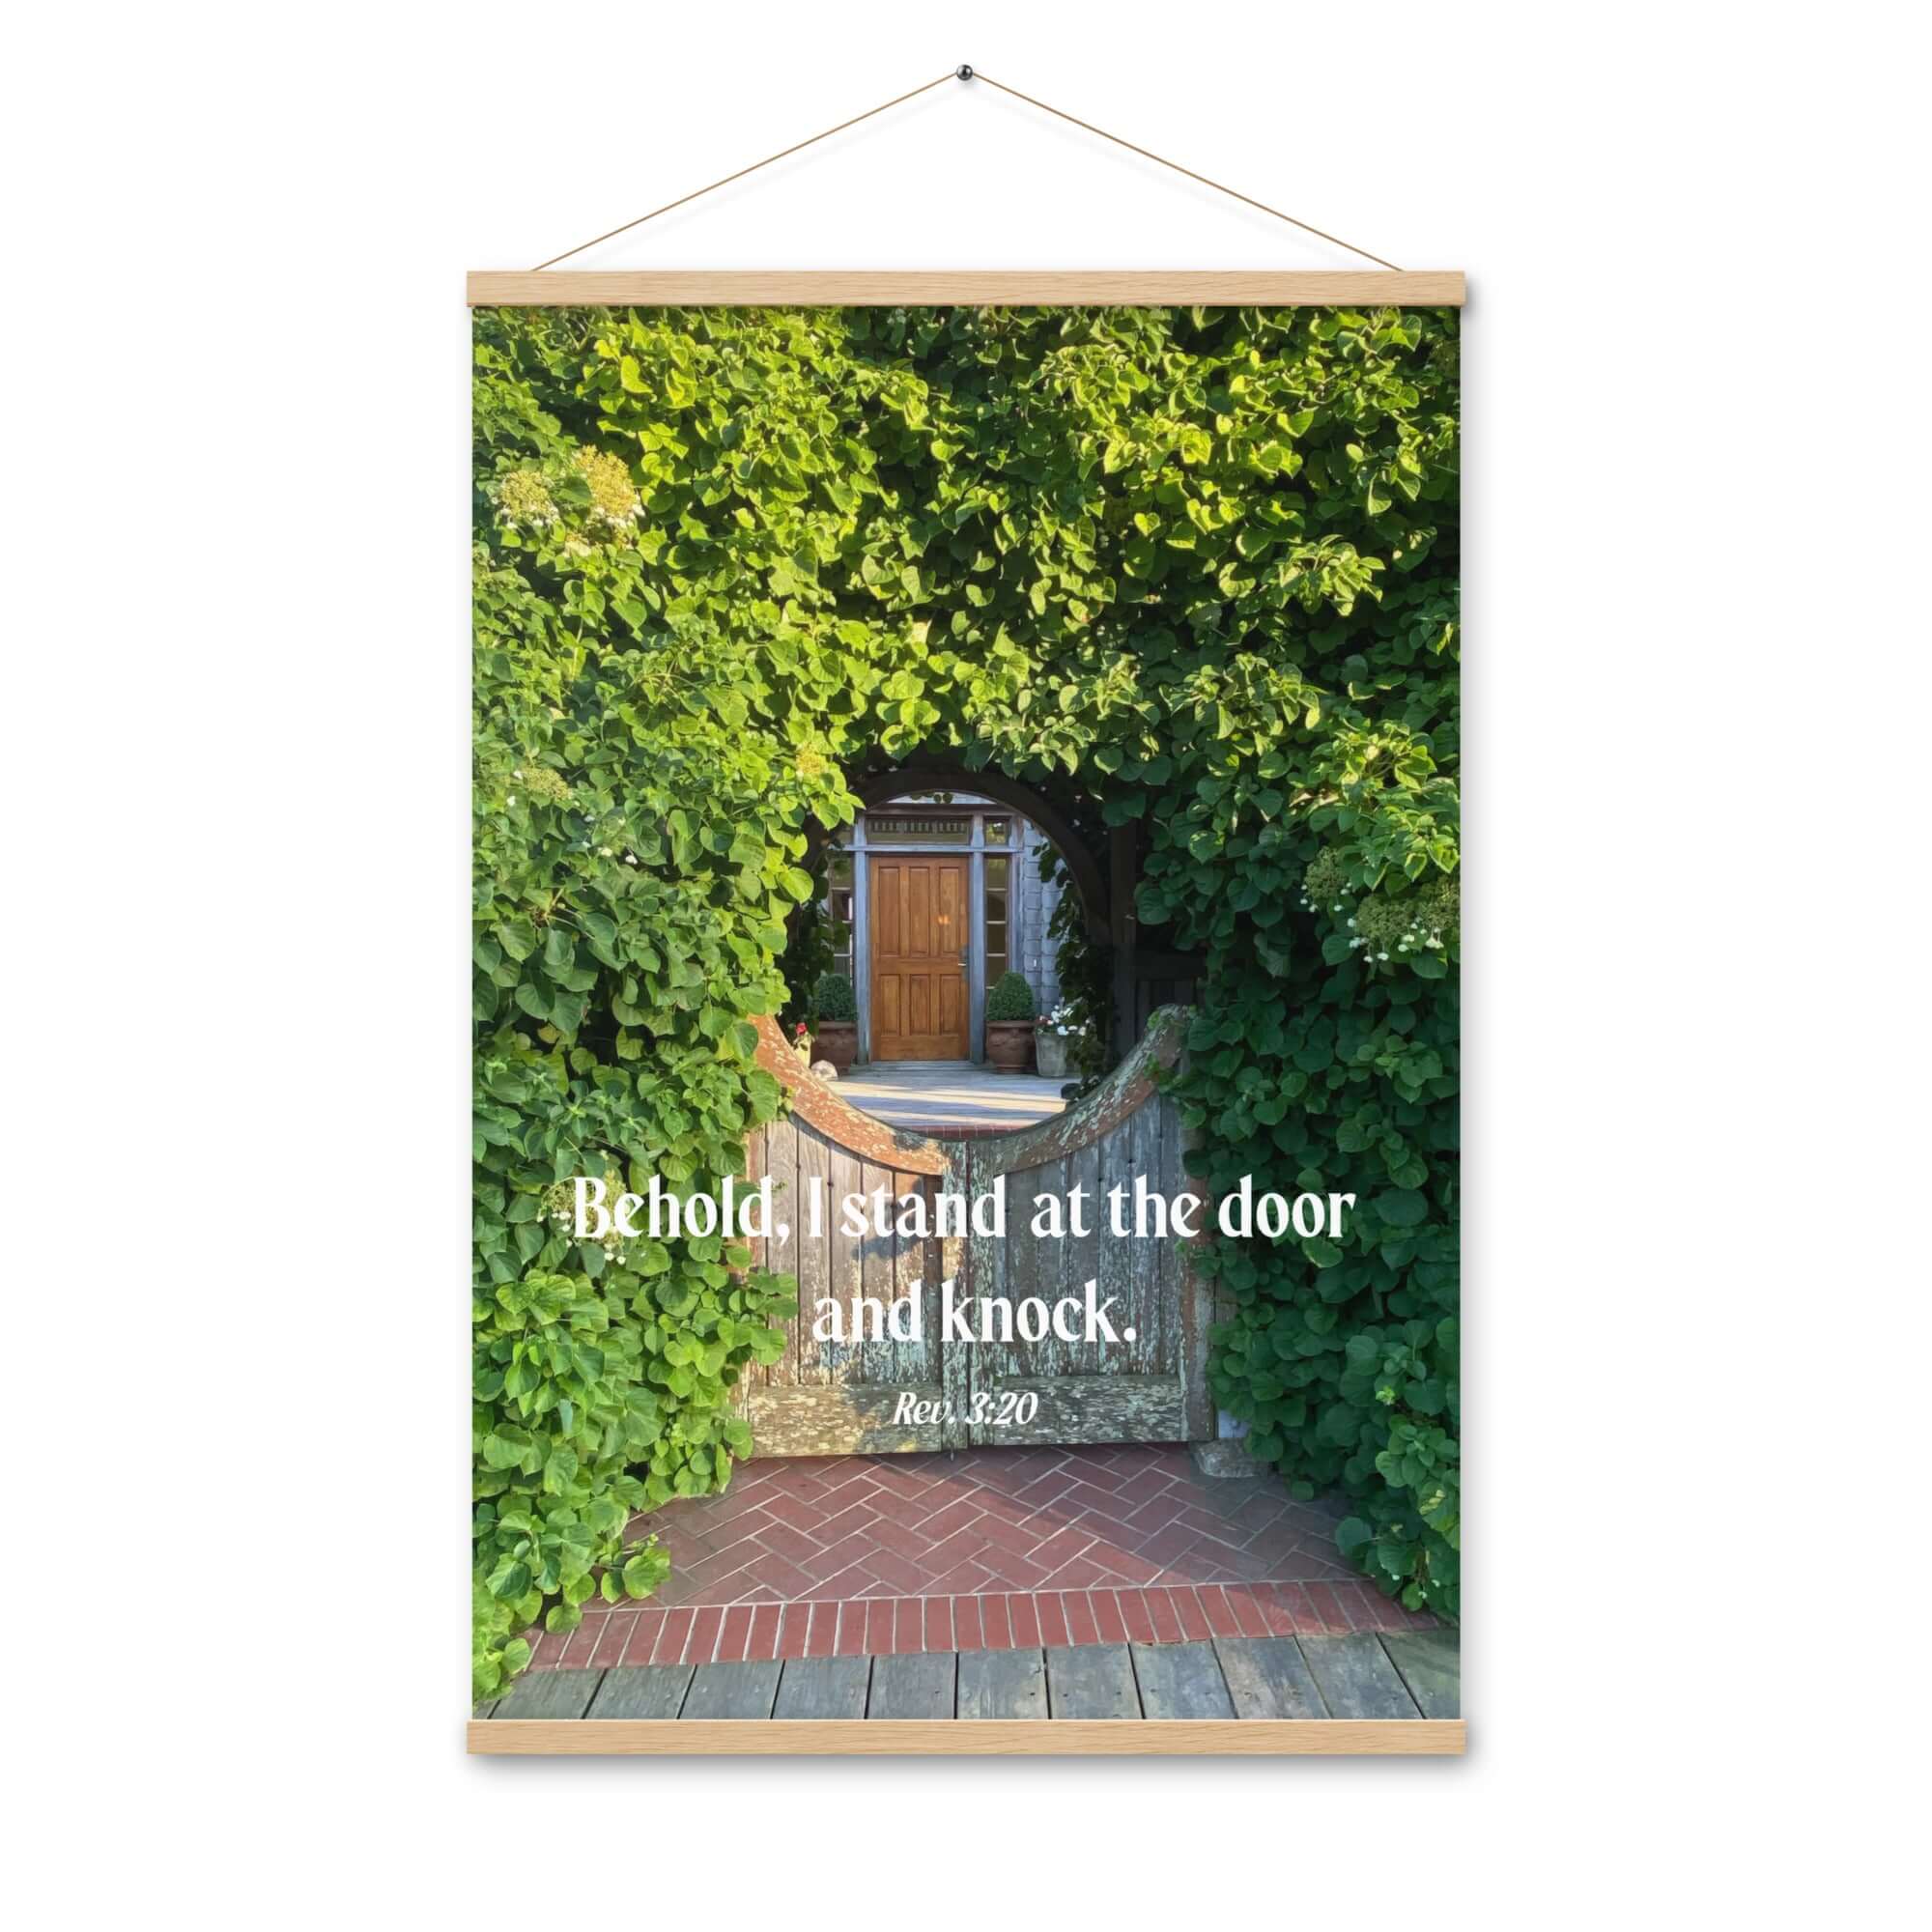 Rev 3:20 Bible Verse, Garden Doorway Hanger Poster